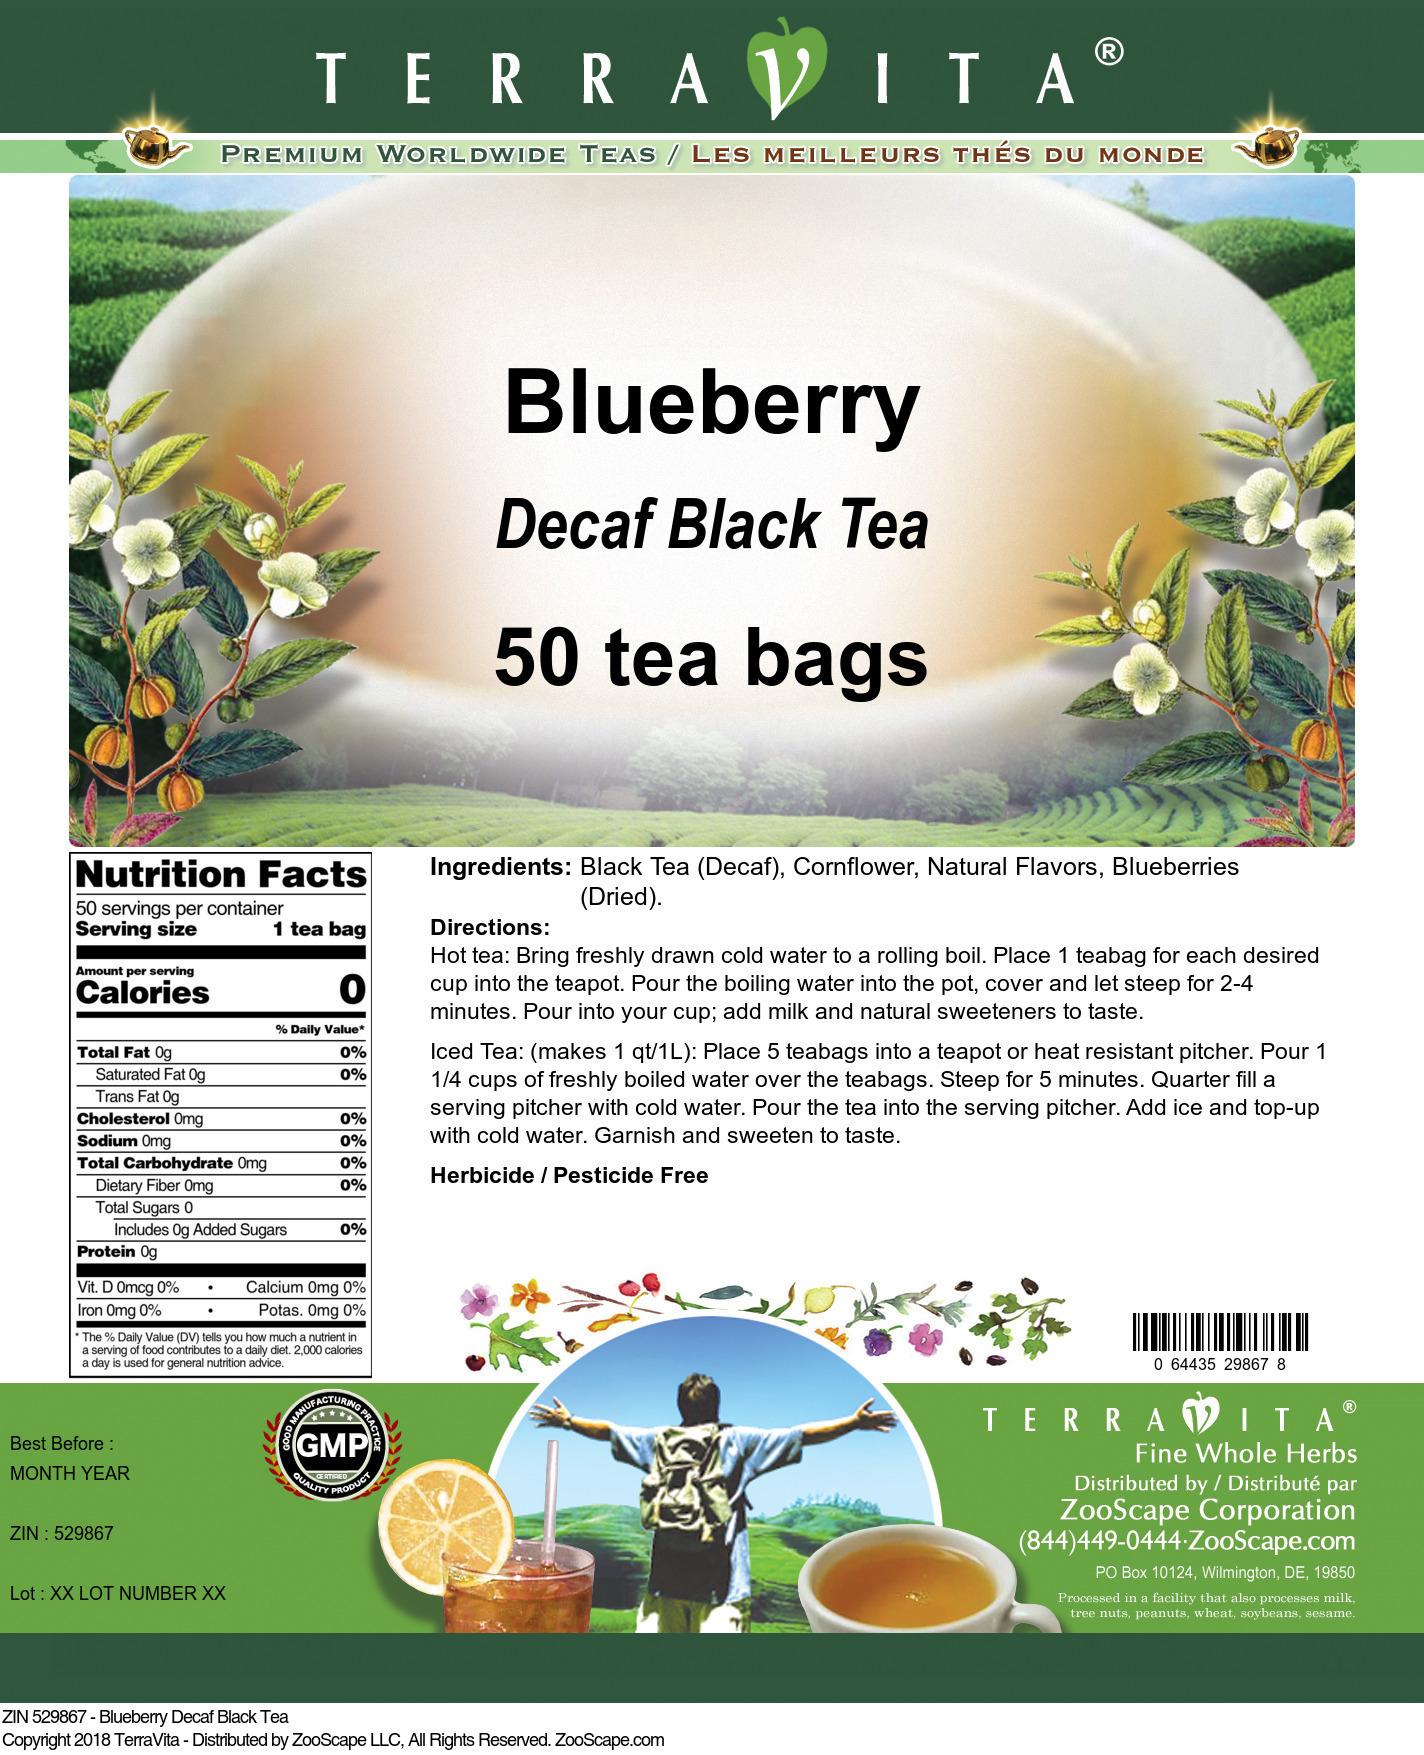 Blueberry Decaf Black Tea - Label